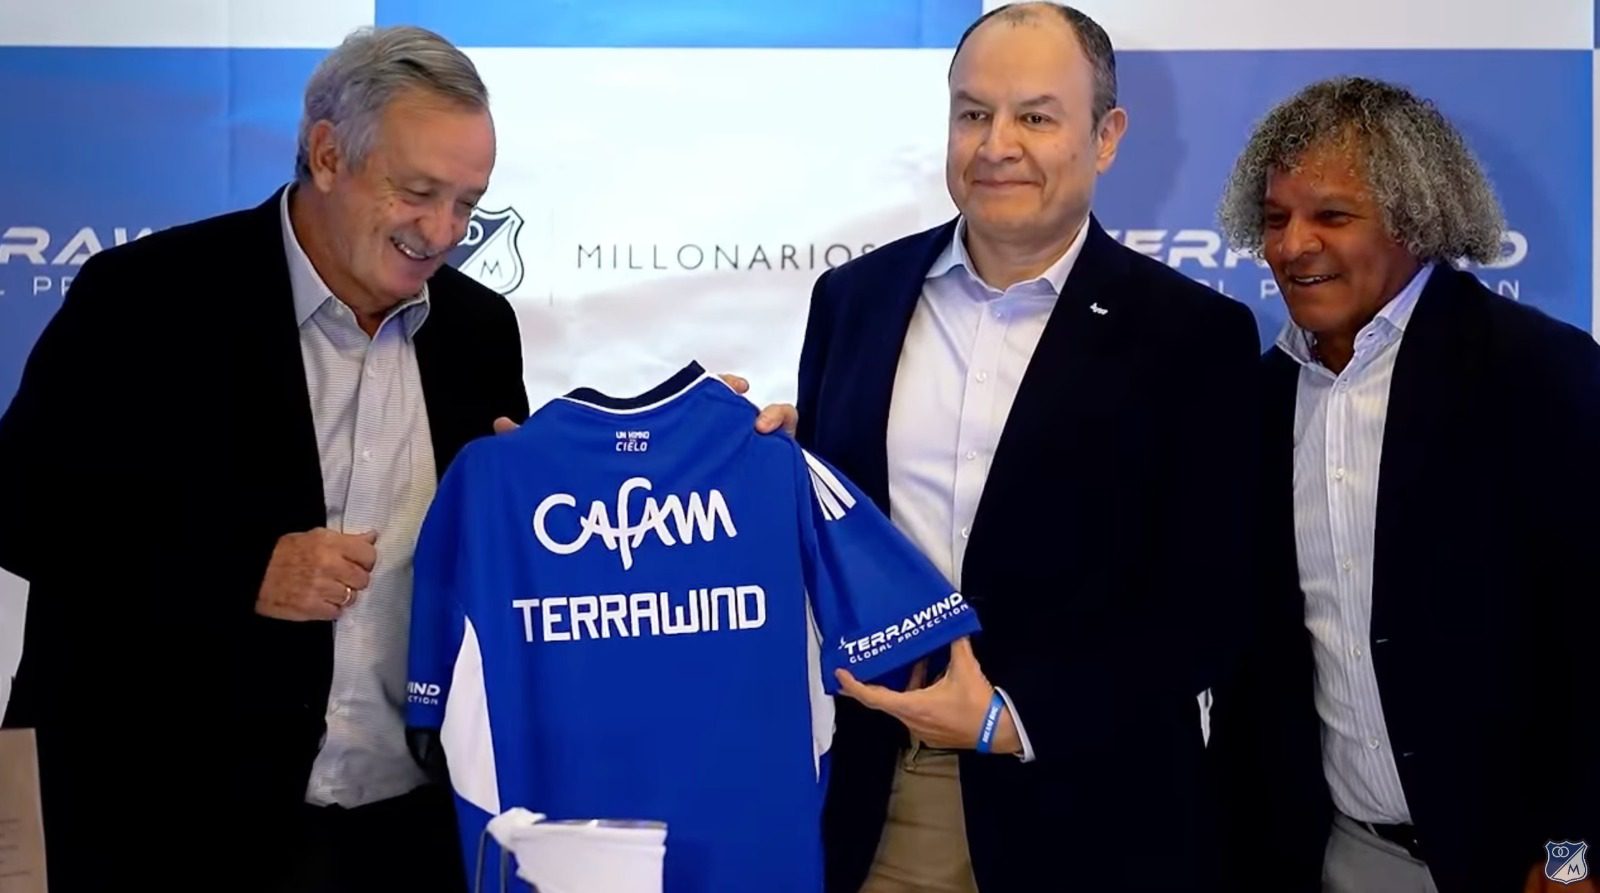 Carlos Fernandez CEO Terrawind patrocinadores de Millonarios FC